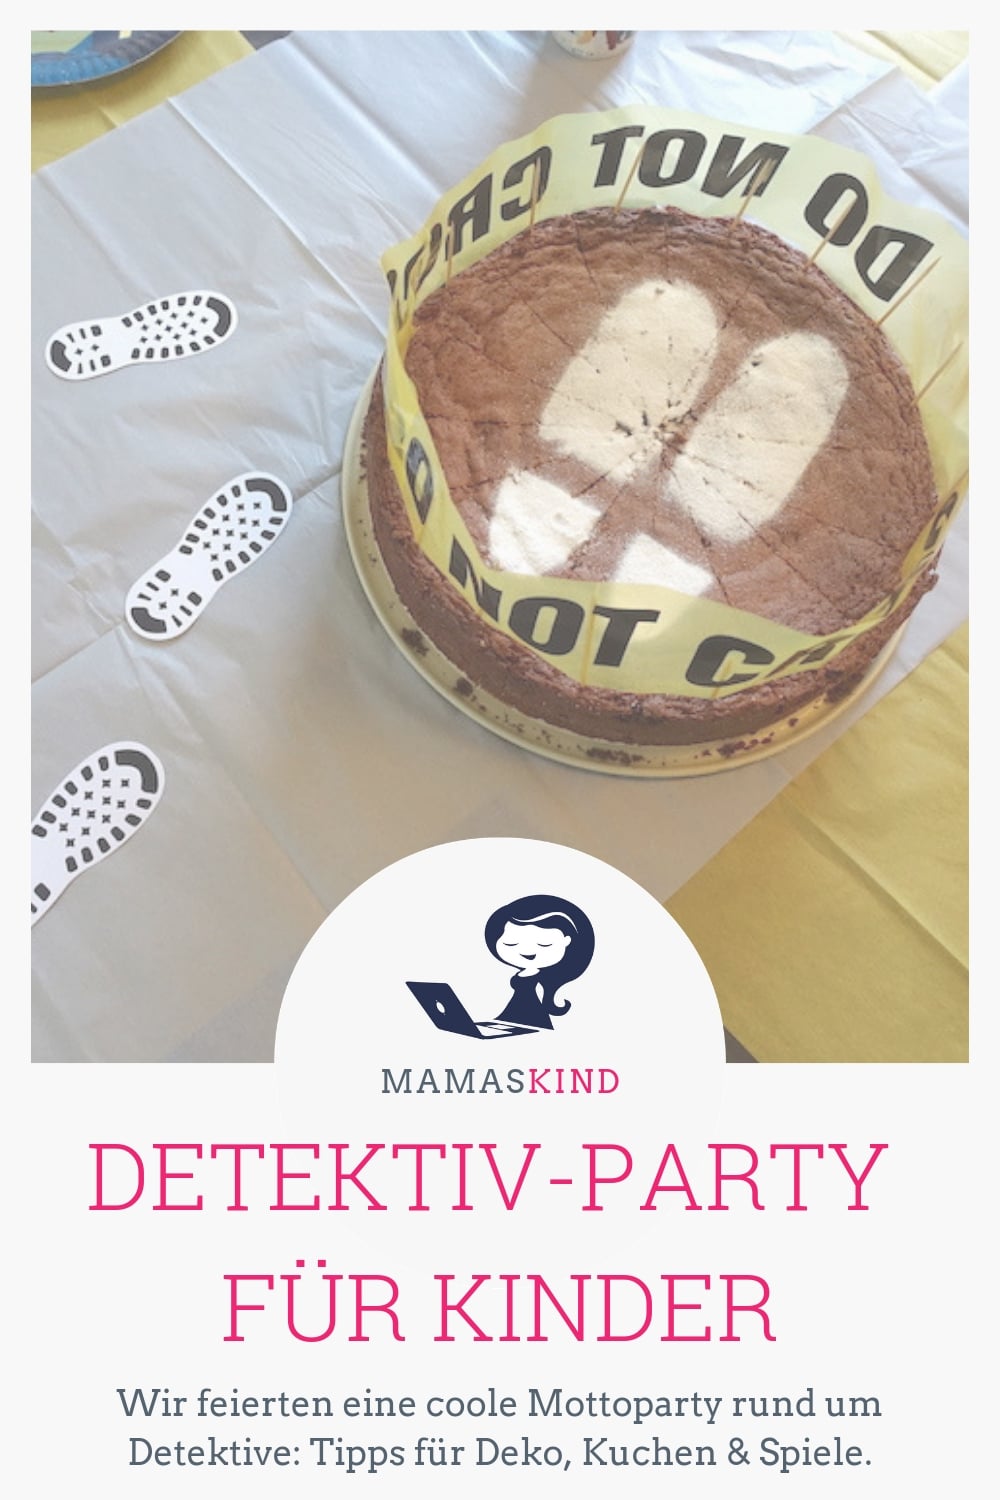 Eine Mottoparty für 9-Jährige: Detektive wie Die drei ??? - mit Spielen, Deko und tollen Kuchen! | Mehr Infos und Inspiration gibt es auf dem Mamablog Mamaskind.de